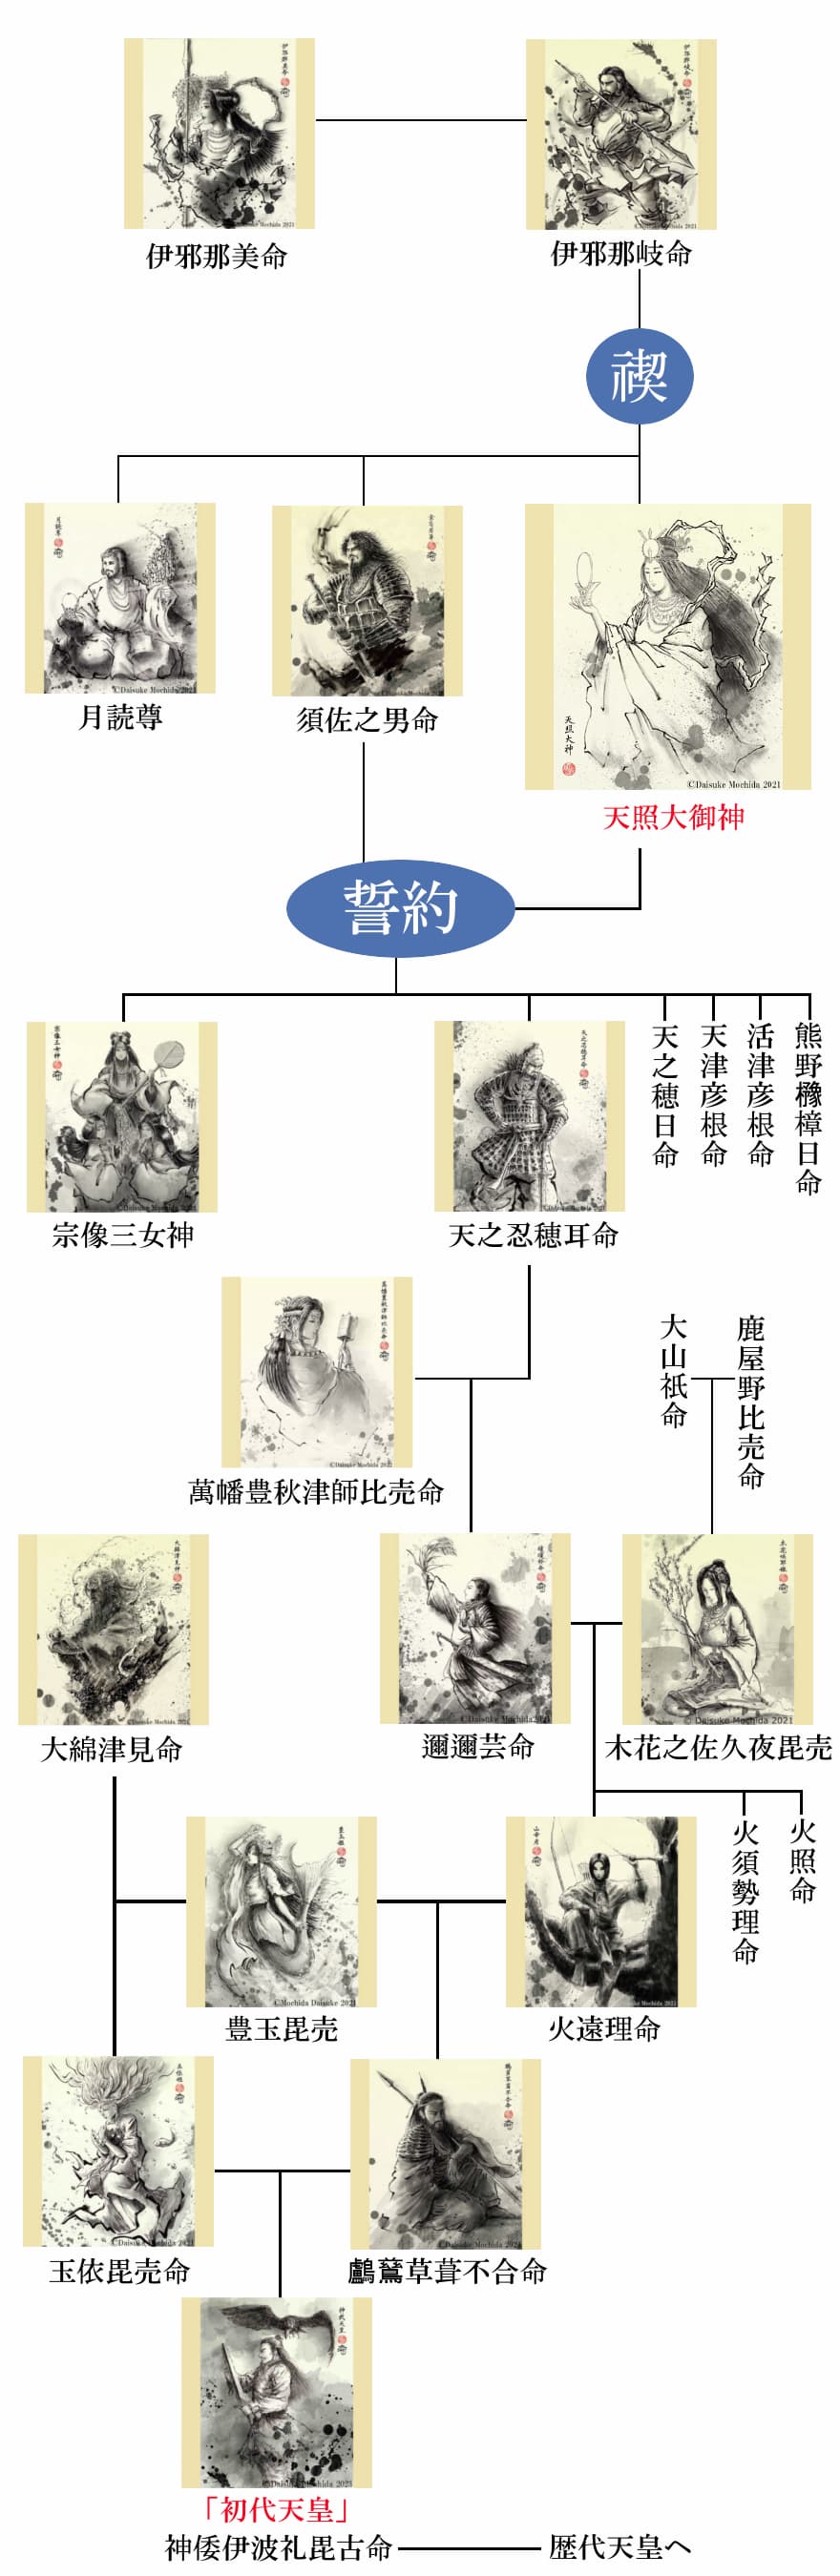 天照大御神の家系図と系譜